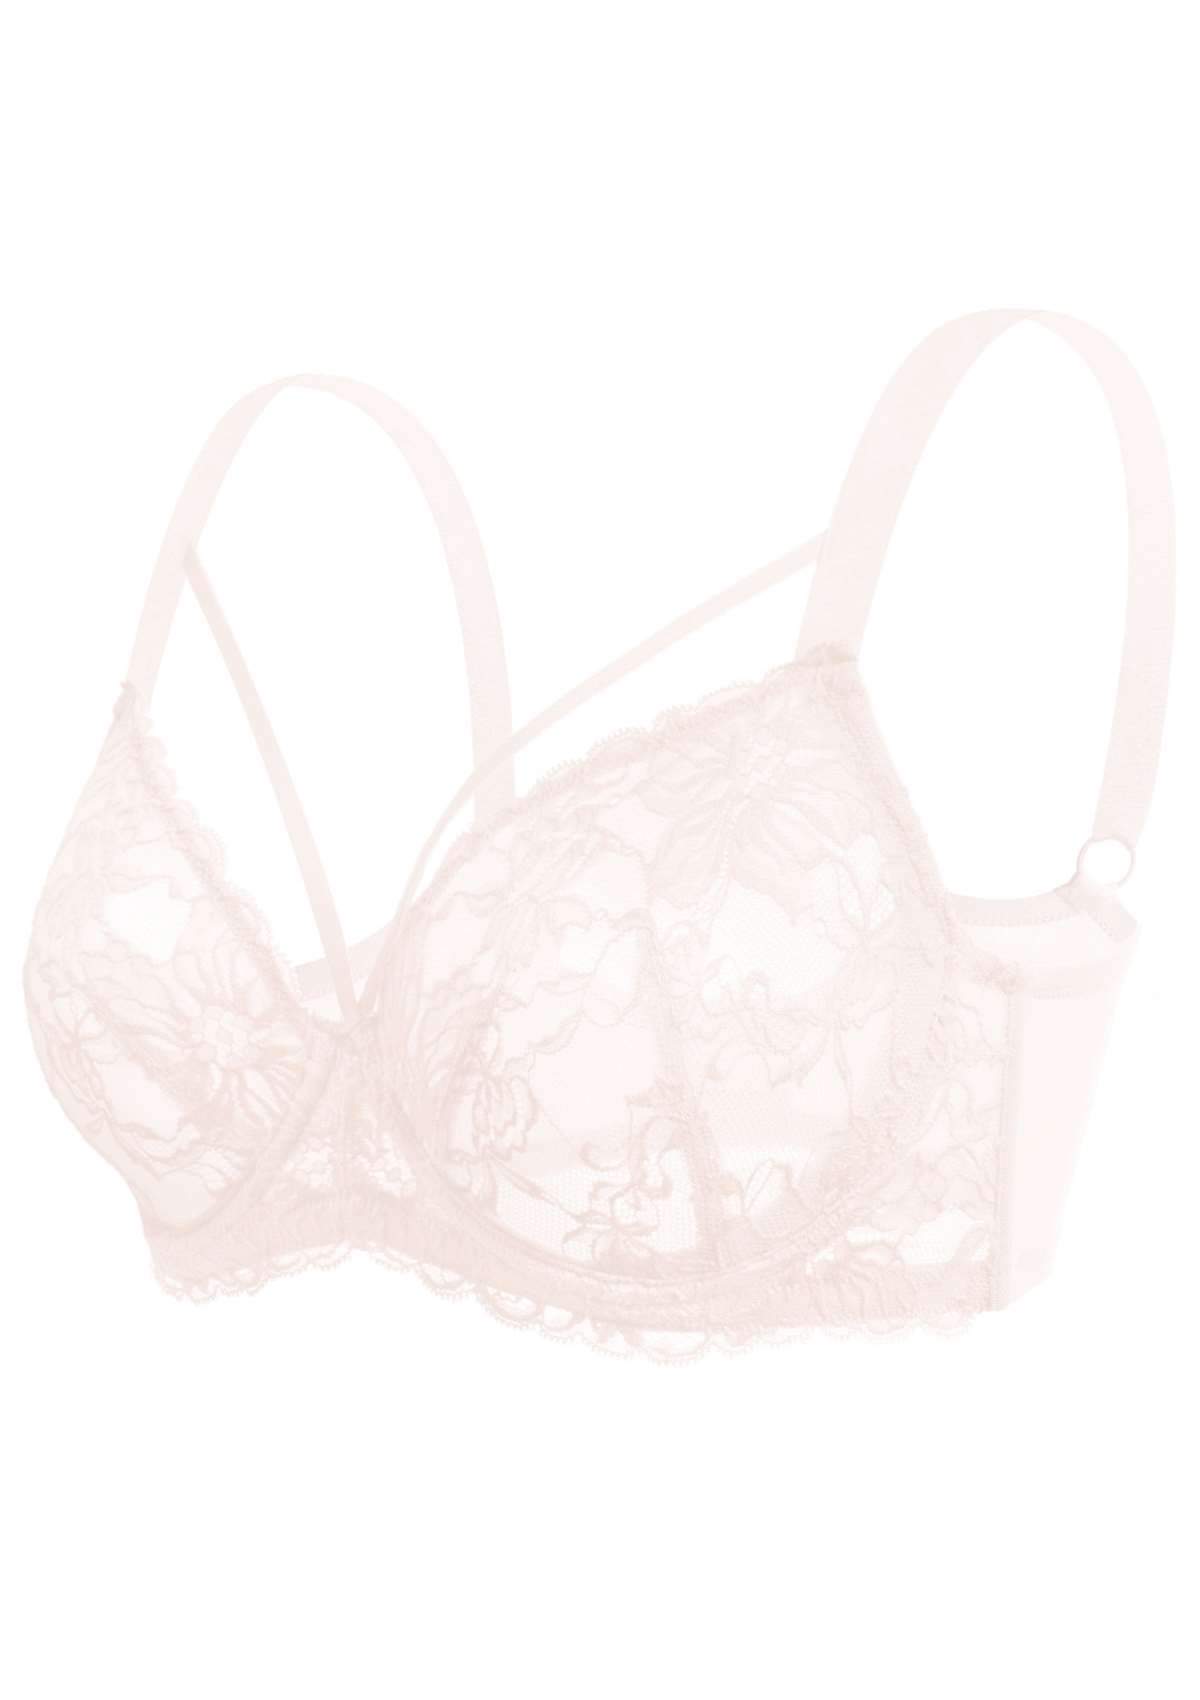 HSIA Pretty In Petals Underwire Lace Bra: No Padding, Full Cup Bra - Dusty Peach / 32 / C